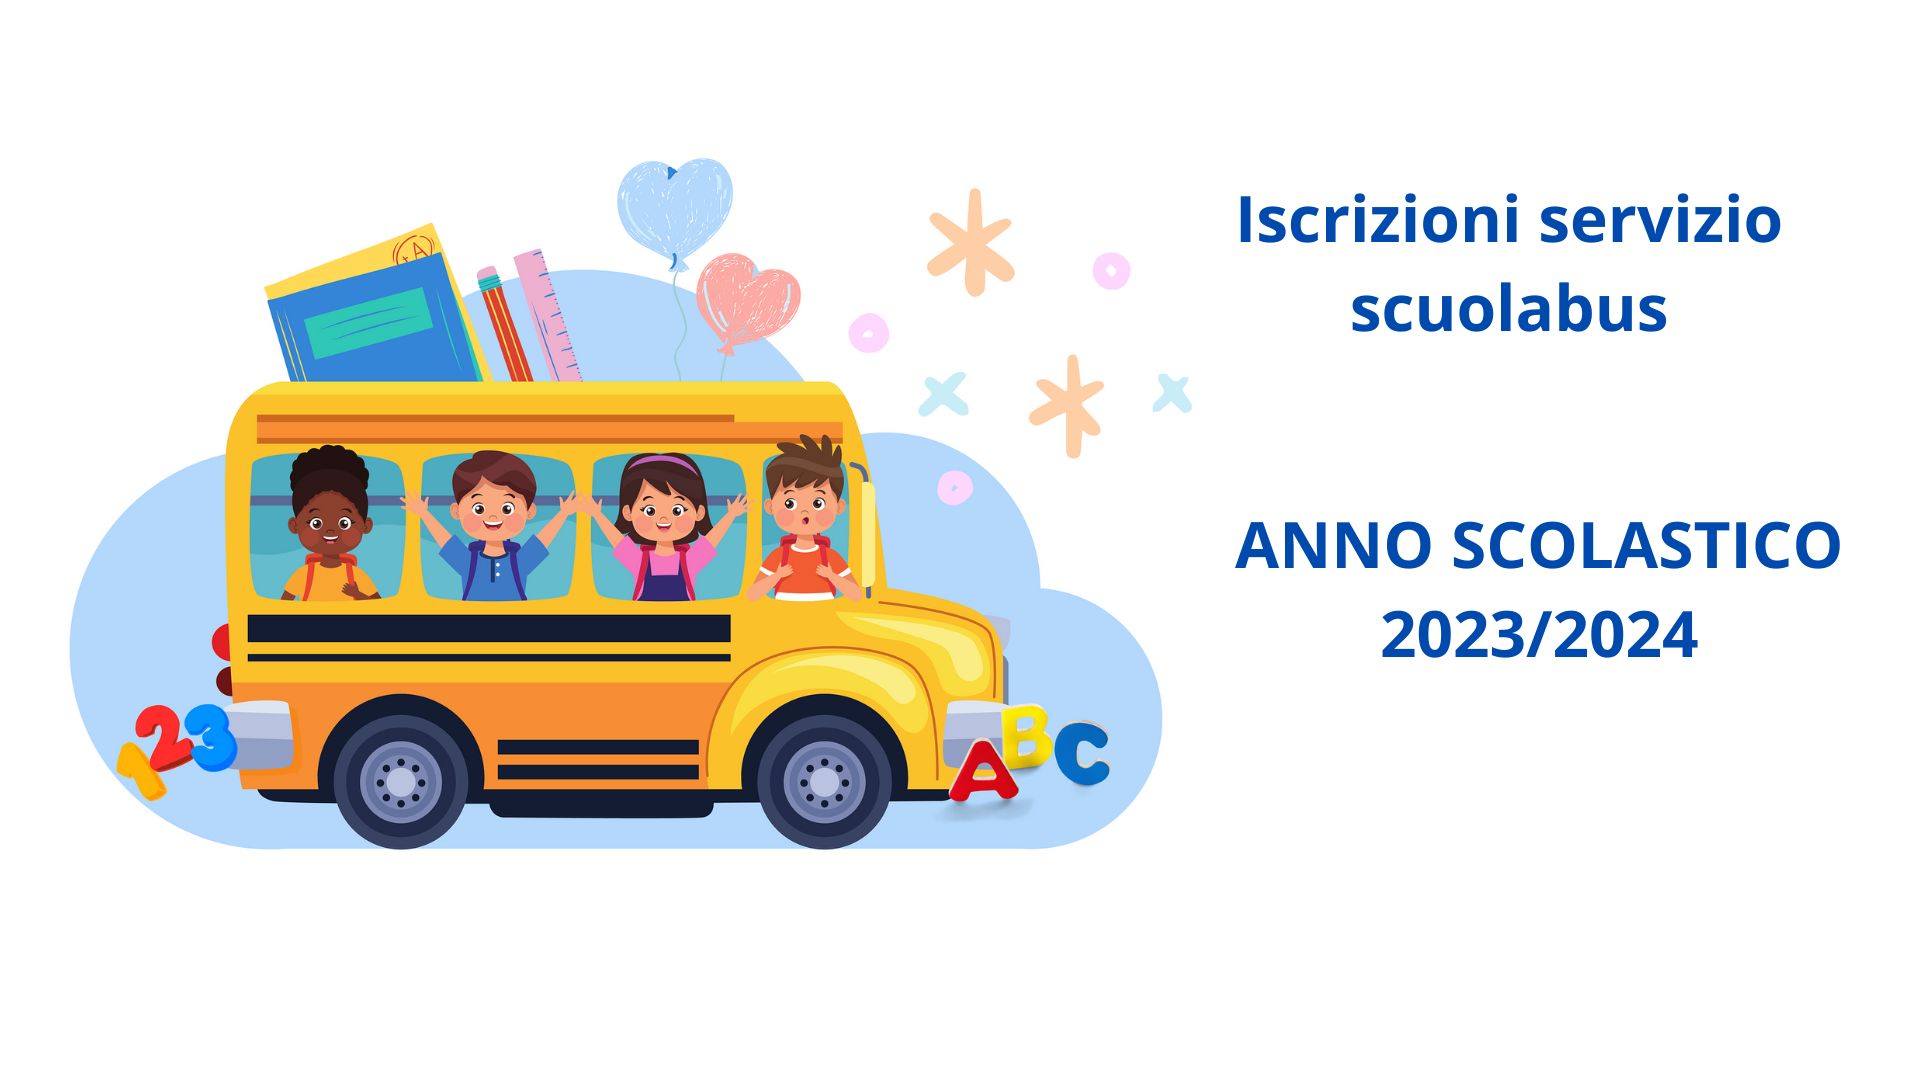 Iscrizioni servizio scuolabus – A.S. 2023/2024